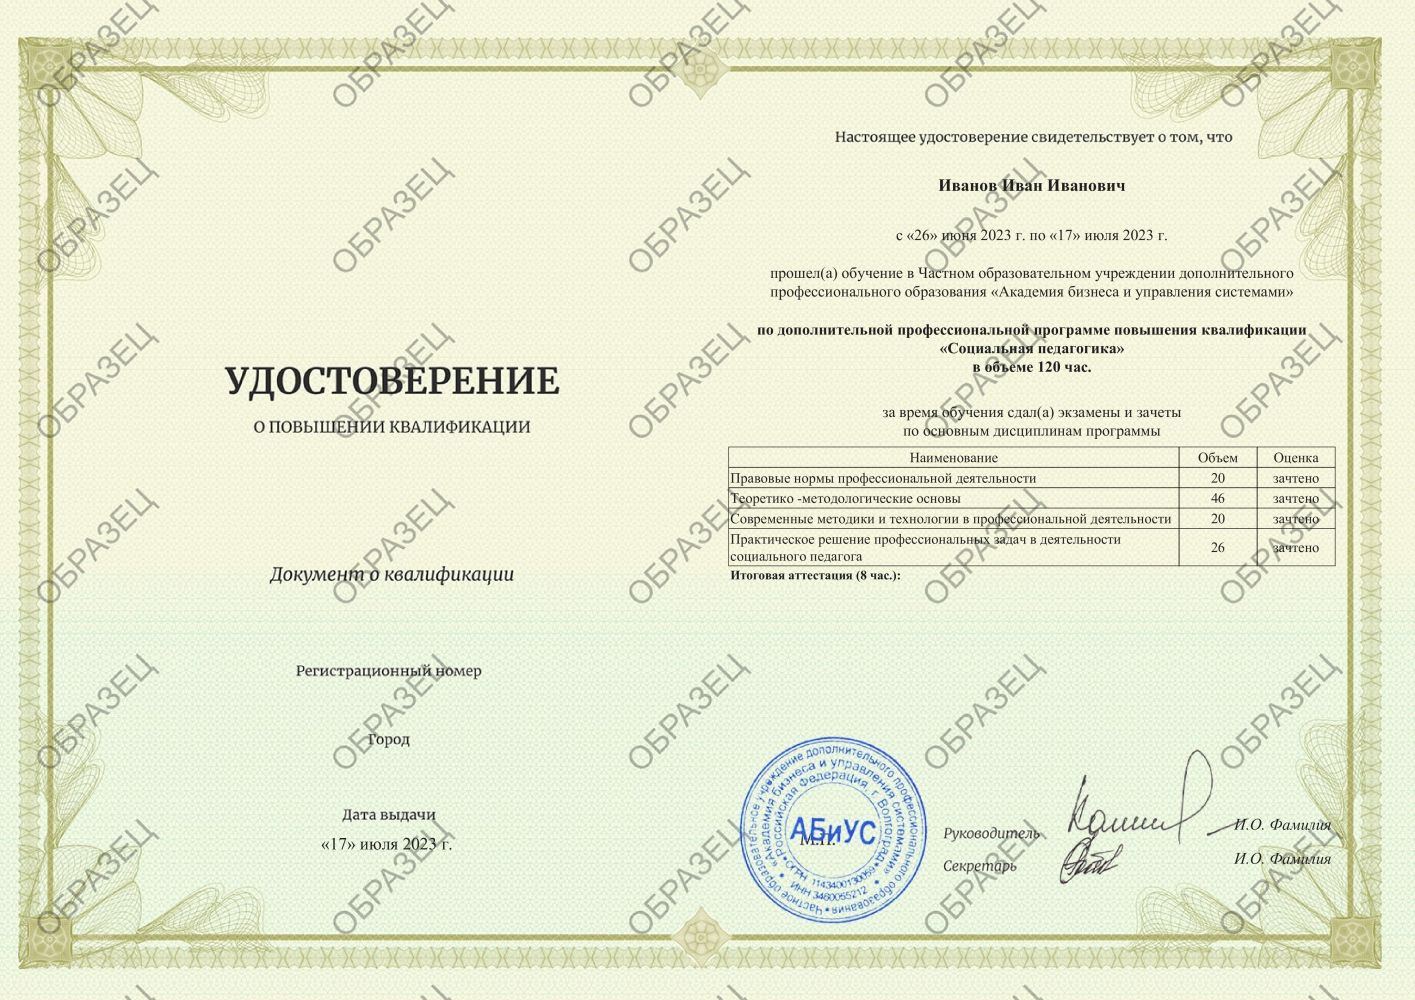 Удостоверение Социальная педагогика 120 часов 4938 руб.